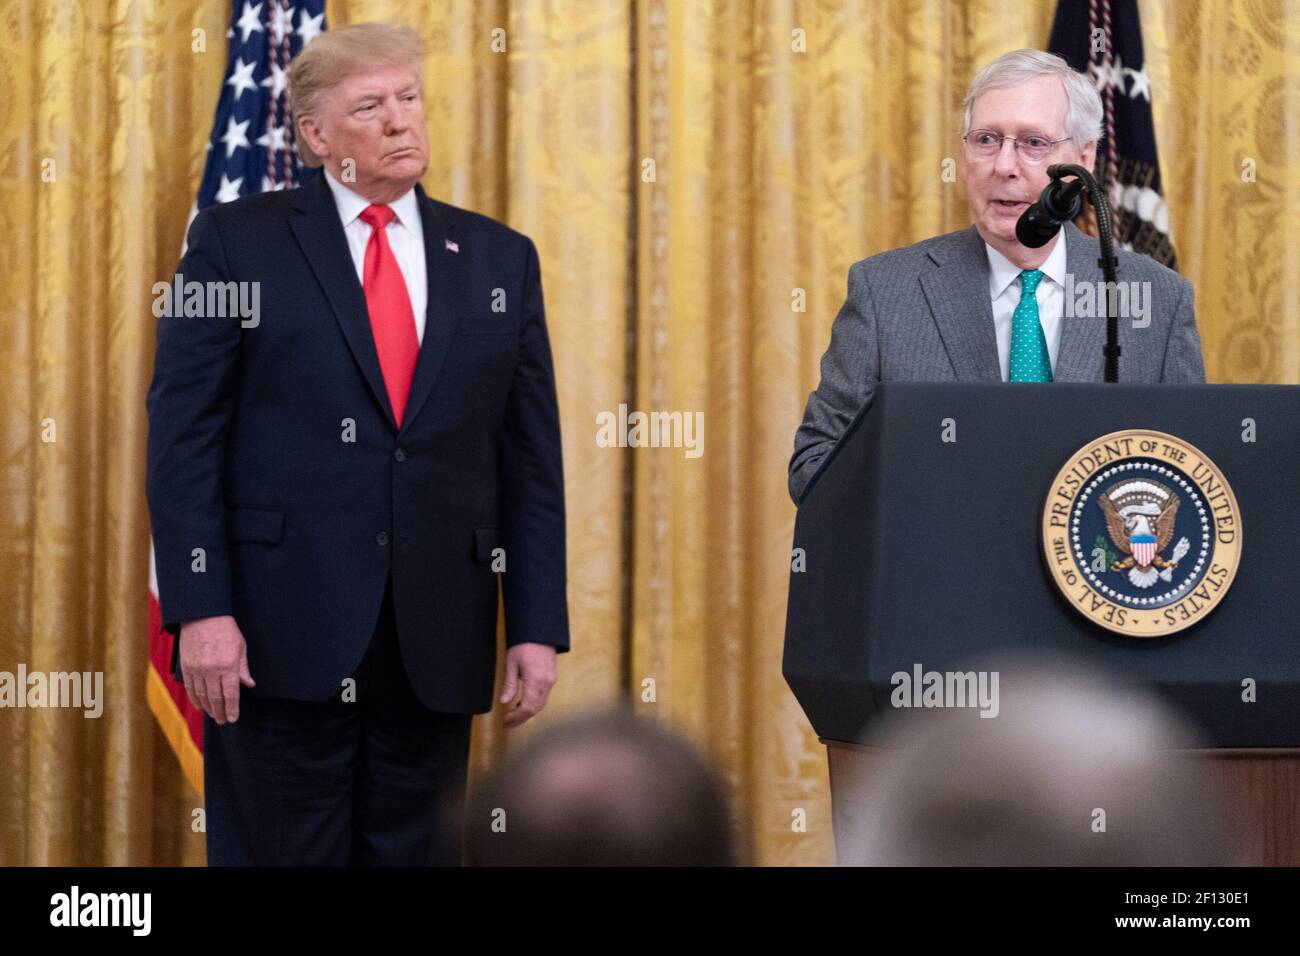 Il presidente Donald Trump onora il leader della maggioranza del Senato Mitch McConnell durante l'evento delle pietre miliari della conferma giudiziaria federale mercoledì 6 novembre 2019 nella Sala Est della Casa Bianca. Foto Stock